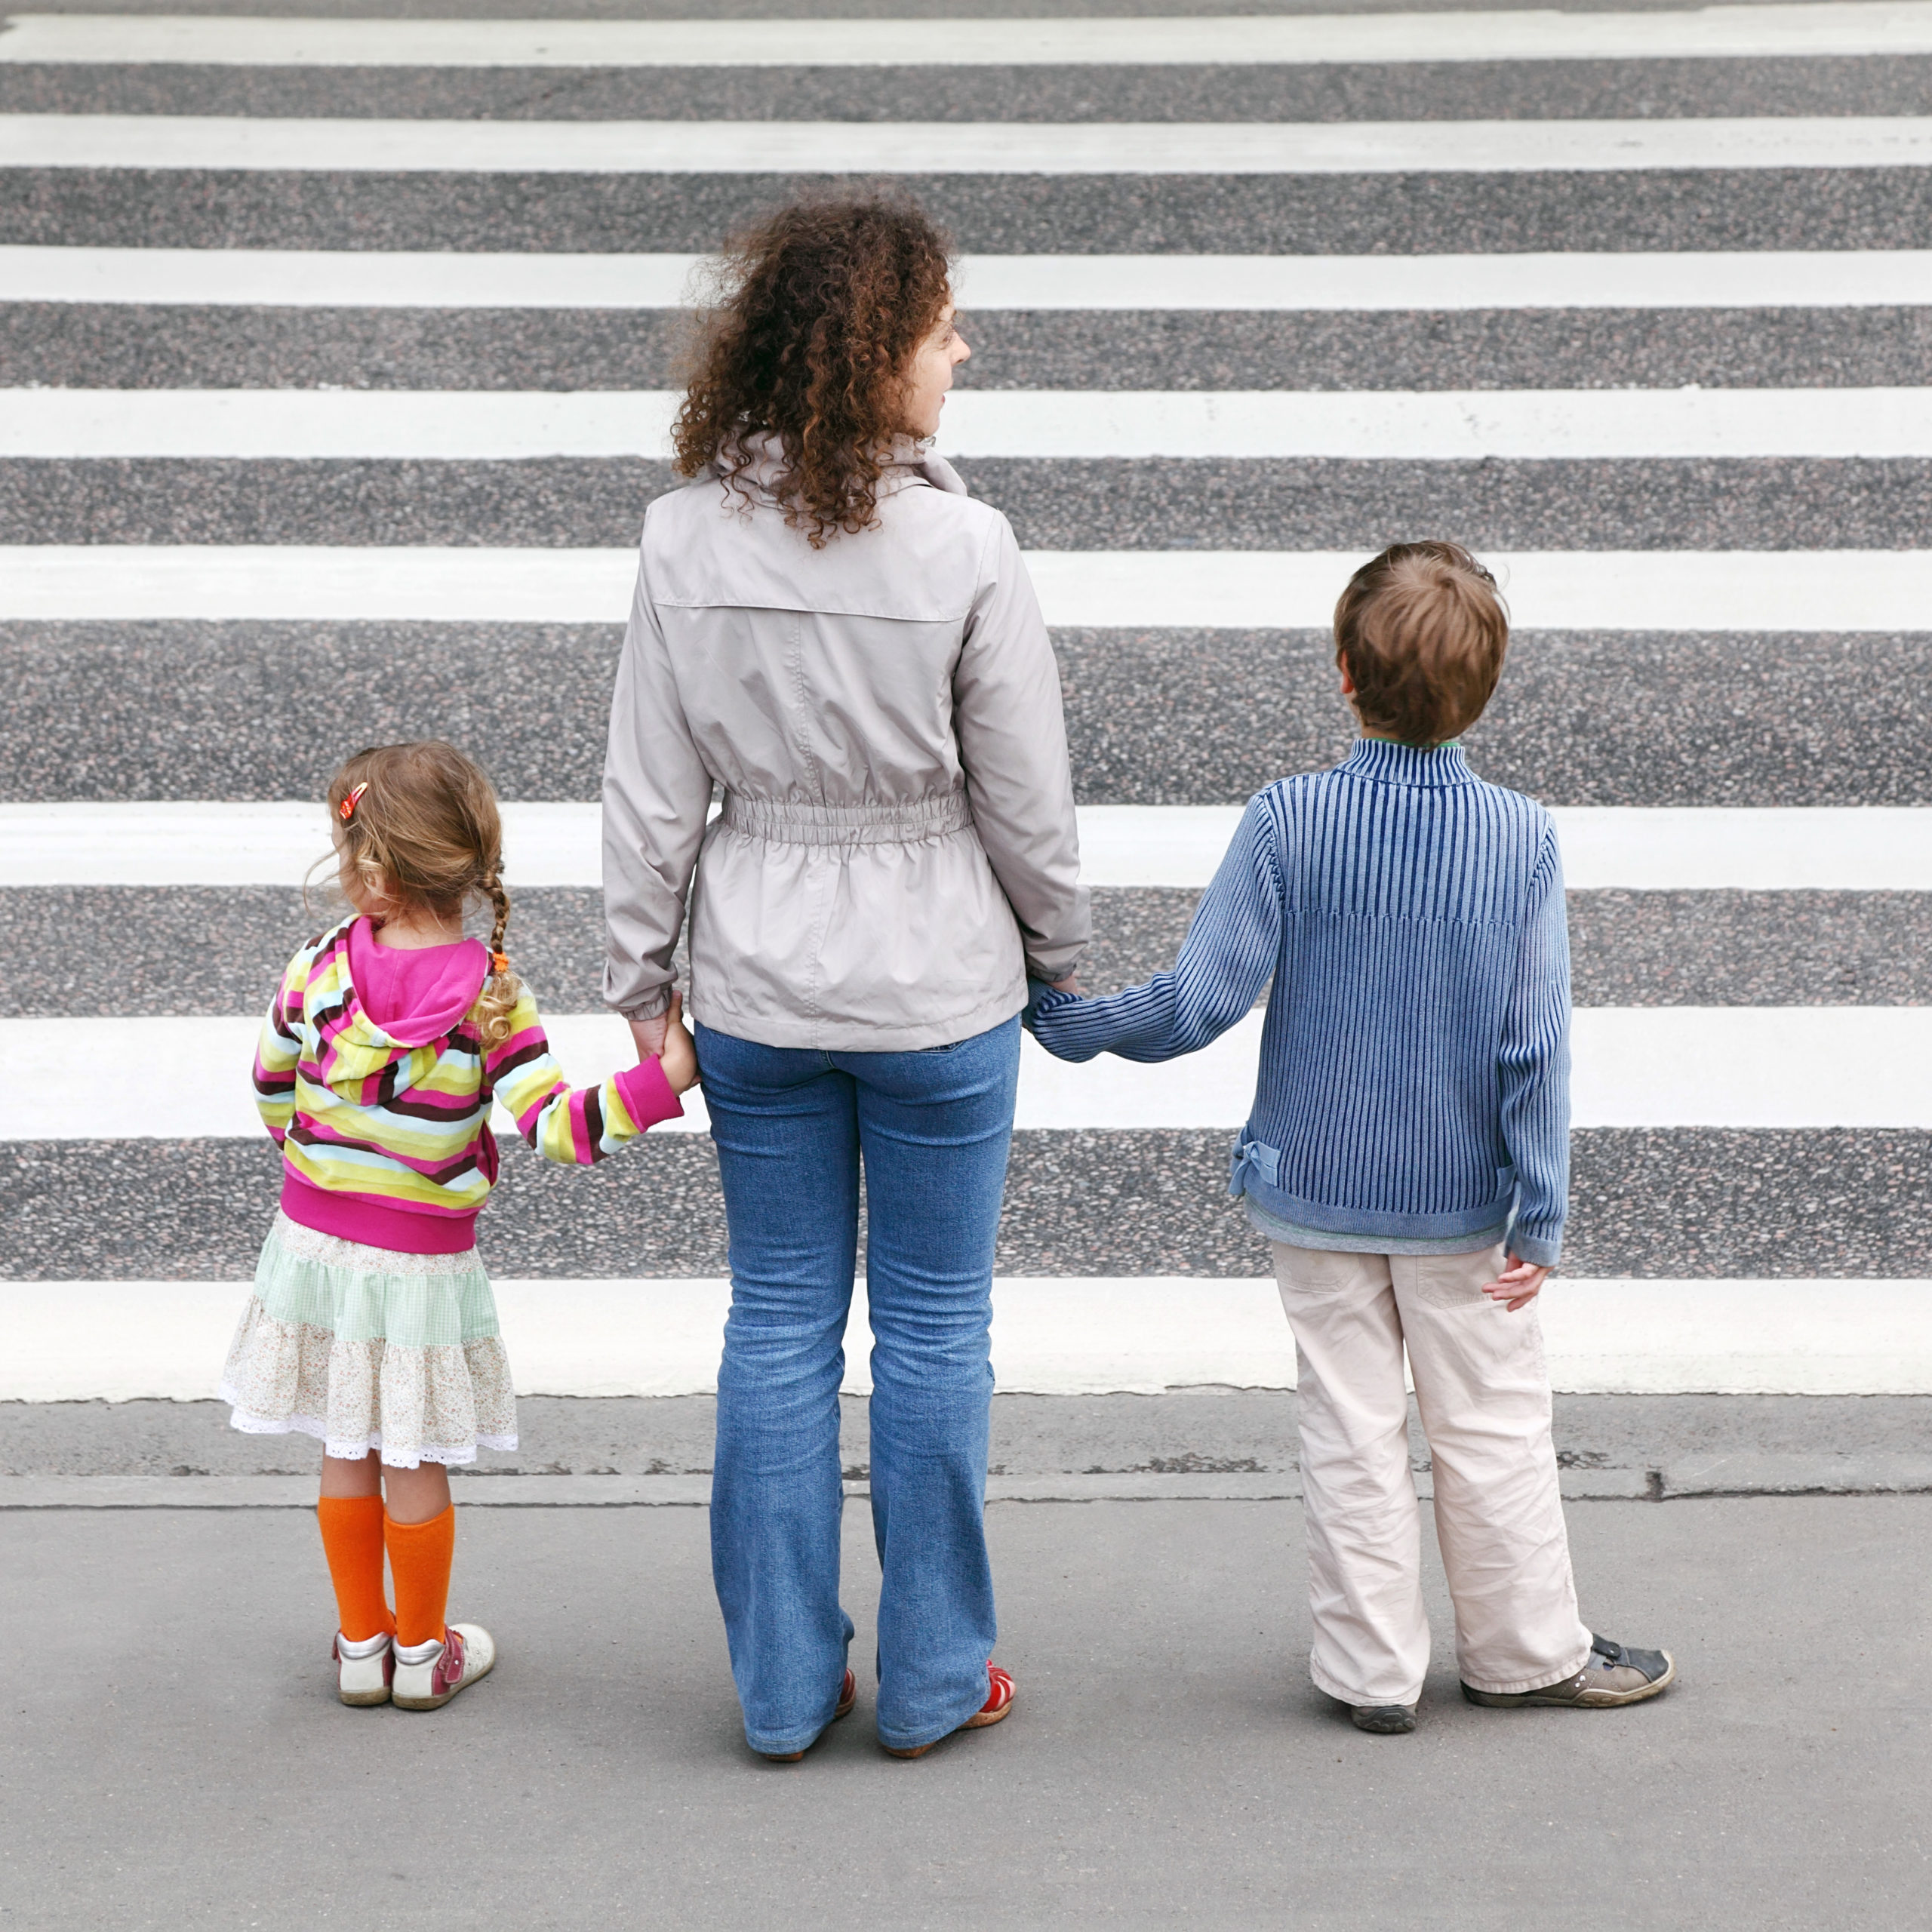 pedestrian safety tips